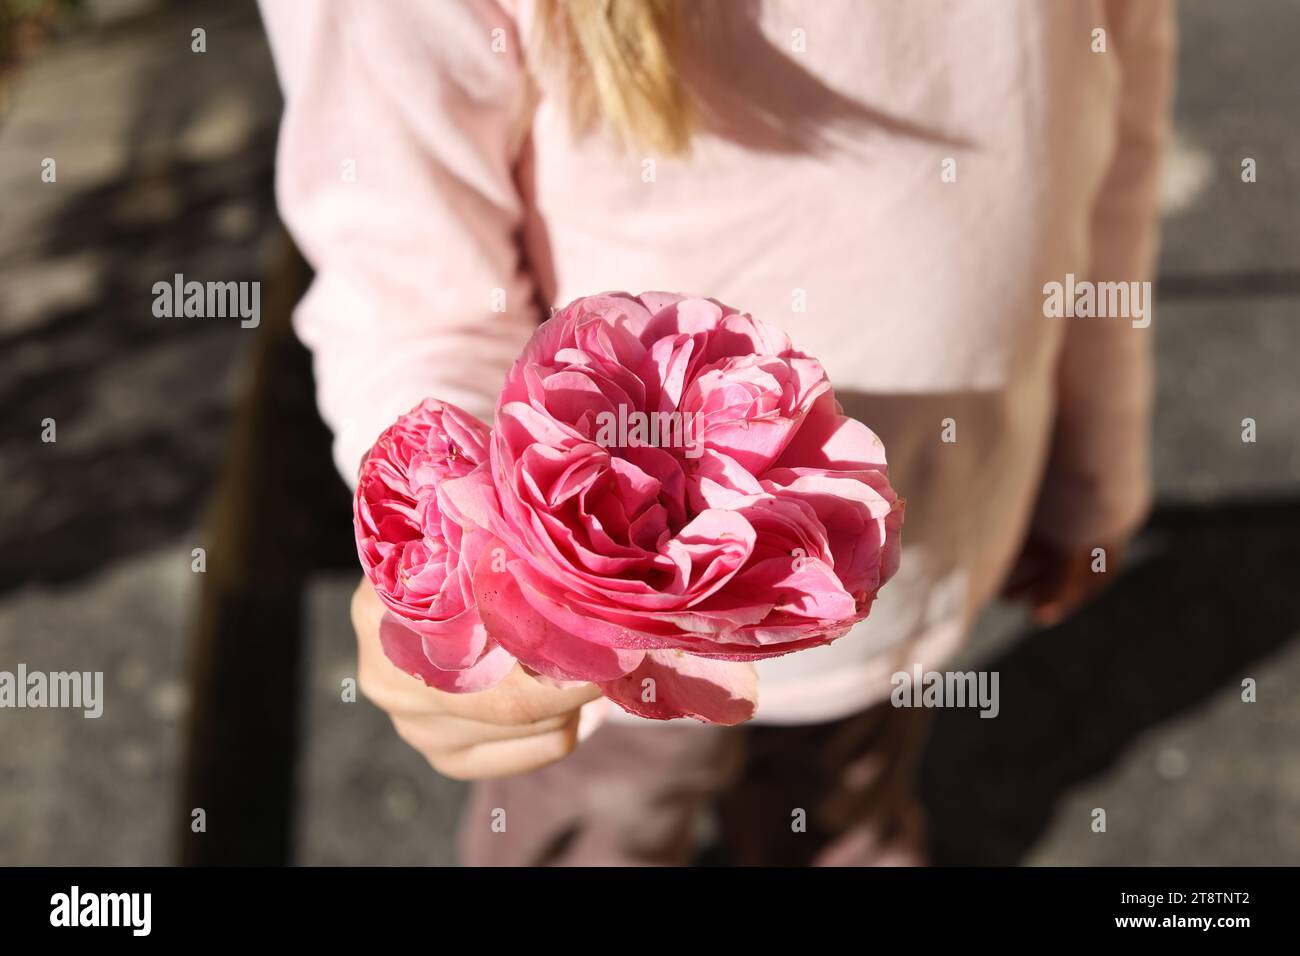 Eine Nahaufnahme einer kleinen Mädchenhand, die Rosa centifolia, die Provence Rose, Kohl Rose oder Rose de Mai Blume hält Stockfoto